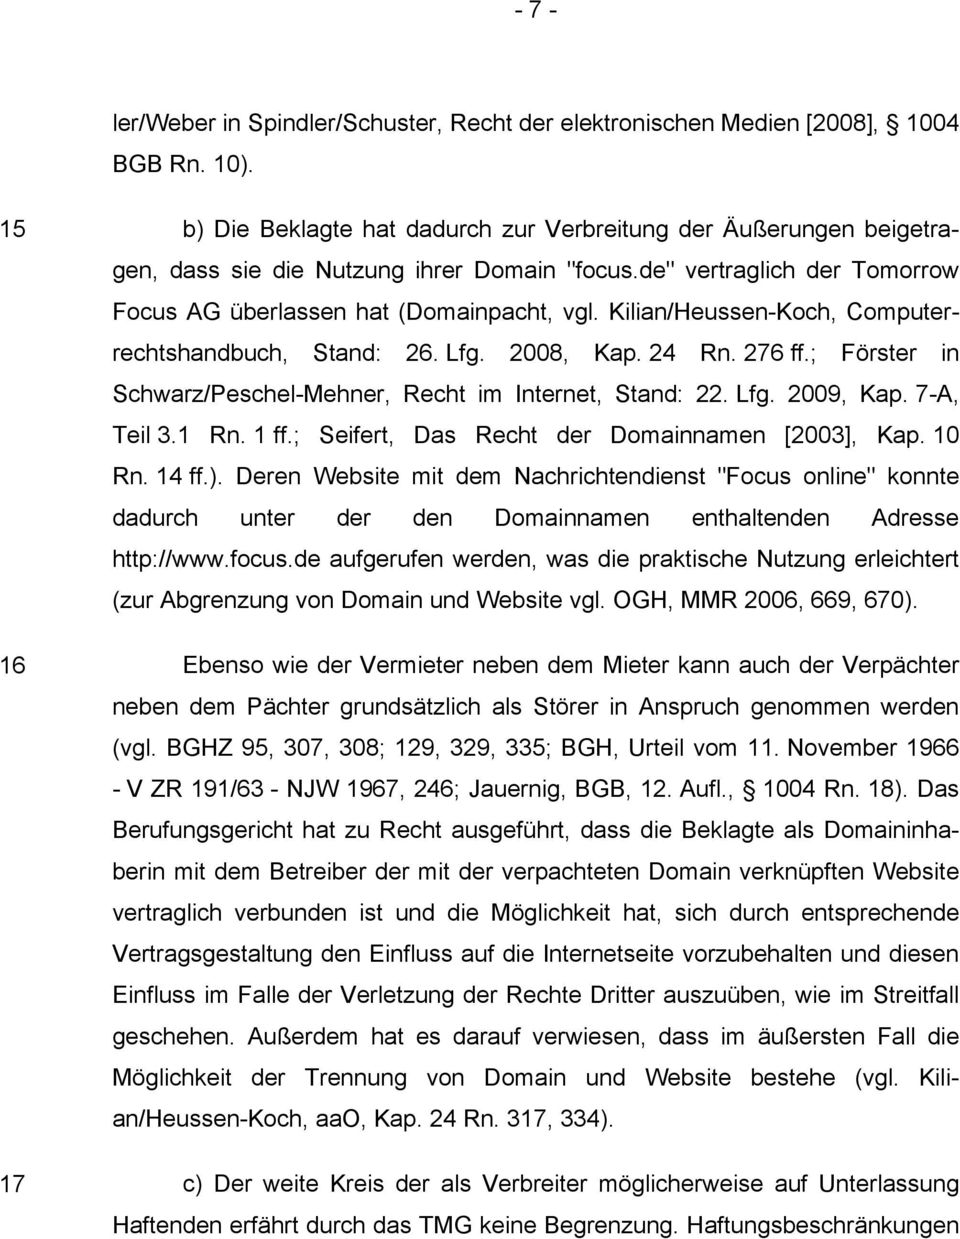 Kilian/Heussen-Koch, Computerrechtshandbuch, Stand: 26. Lfg. 2008, Kap. 24 Rn. 276 ff.; Förster in Schwarz/Peschel-Mehner, Recht im Internet, Stand: 22. Lfg. 2009, Kap. 7-A, Teil 3.1 Rn. 1 ff.